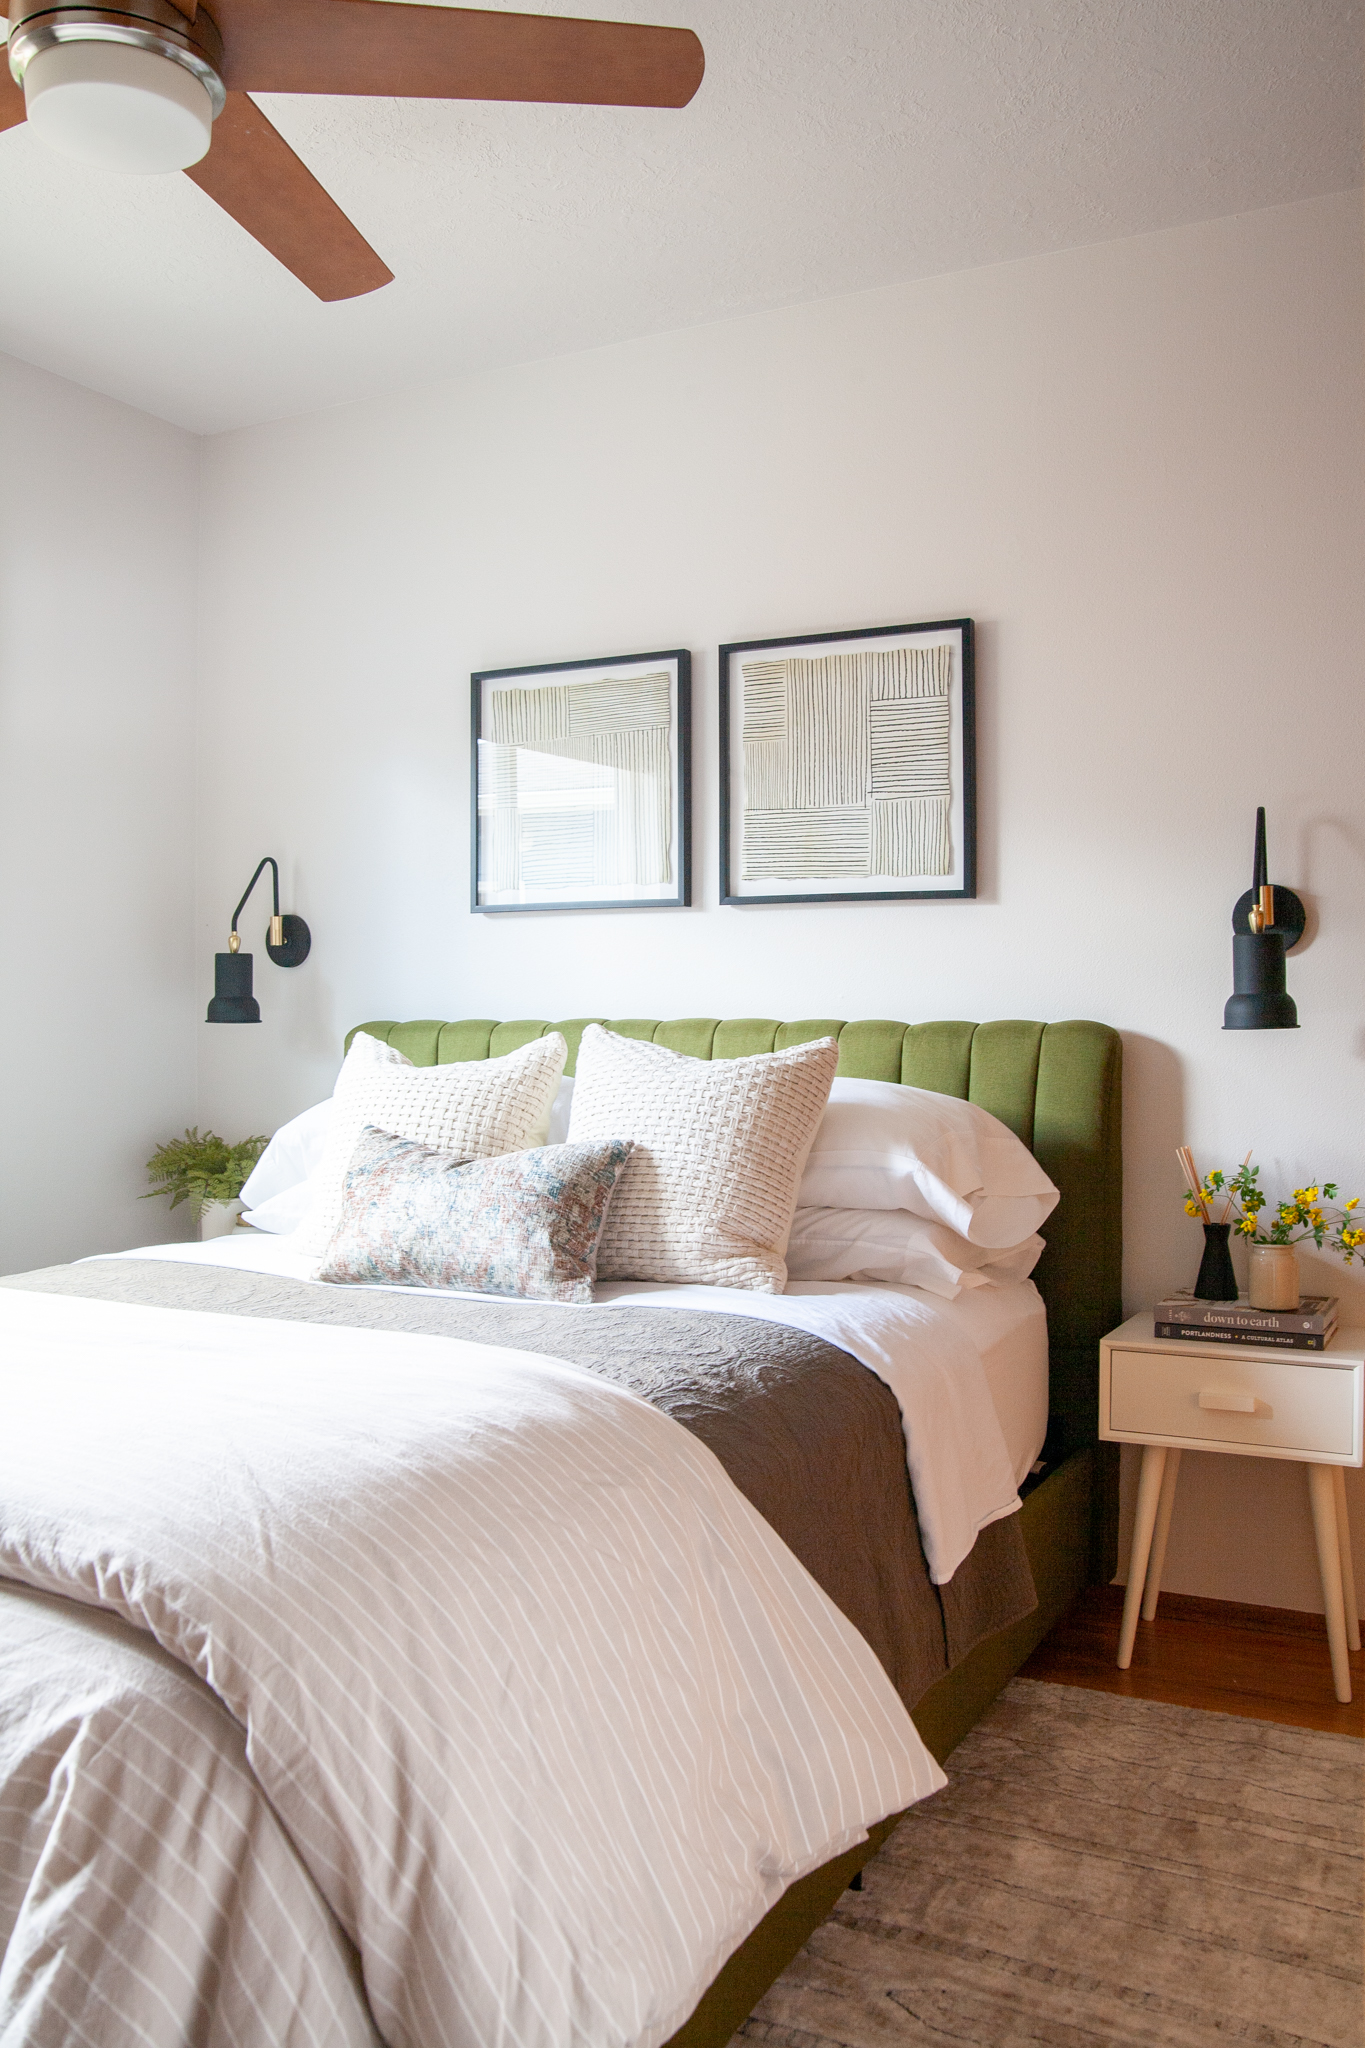 Updated midcentury modern guest bedroom reveal! One Room Challenge Week 8 / Create / Enjoy